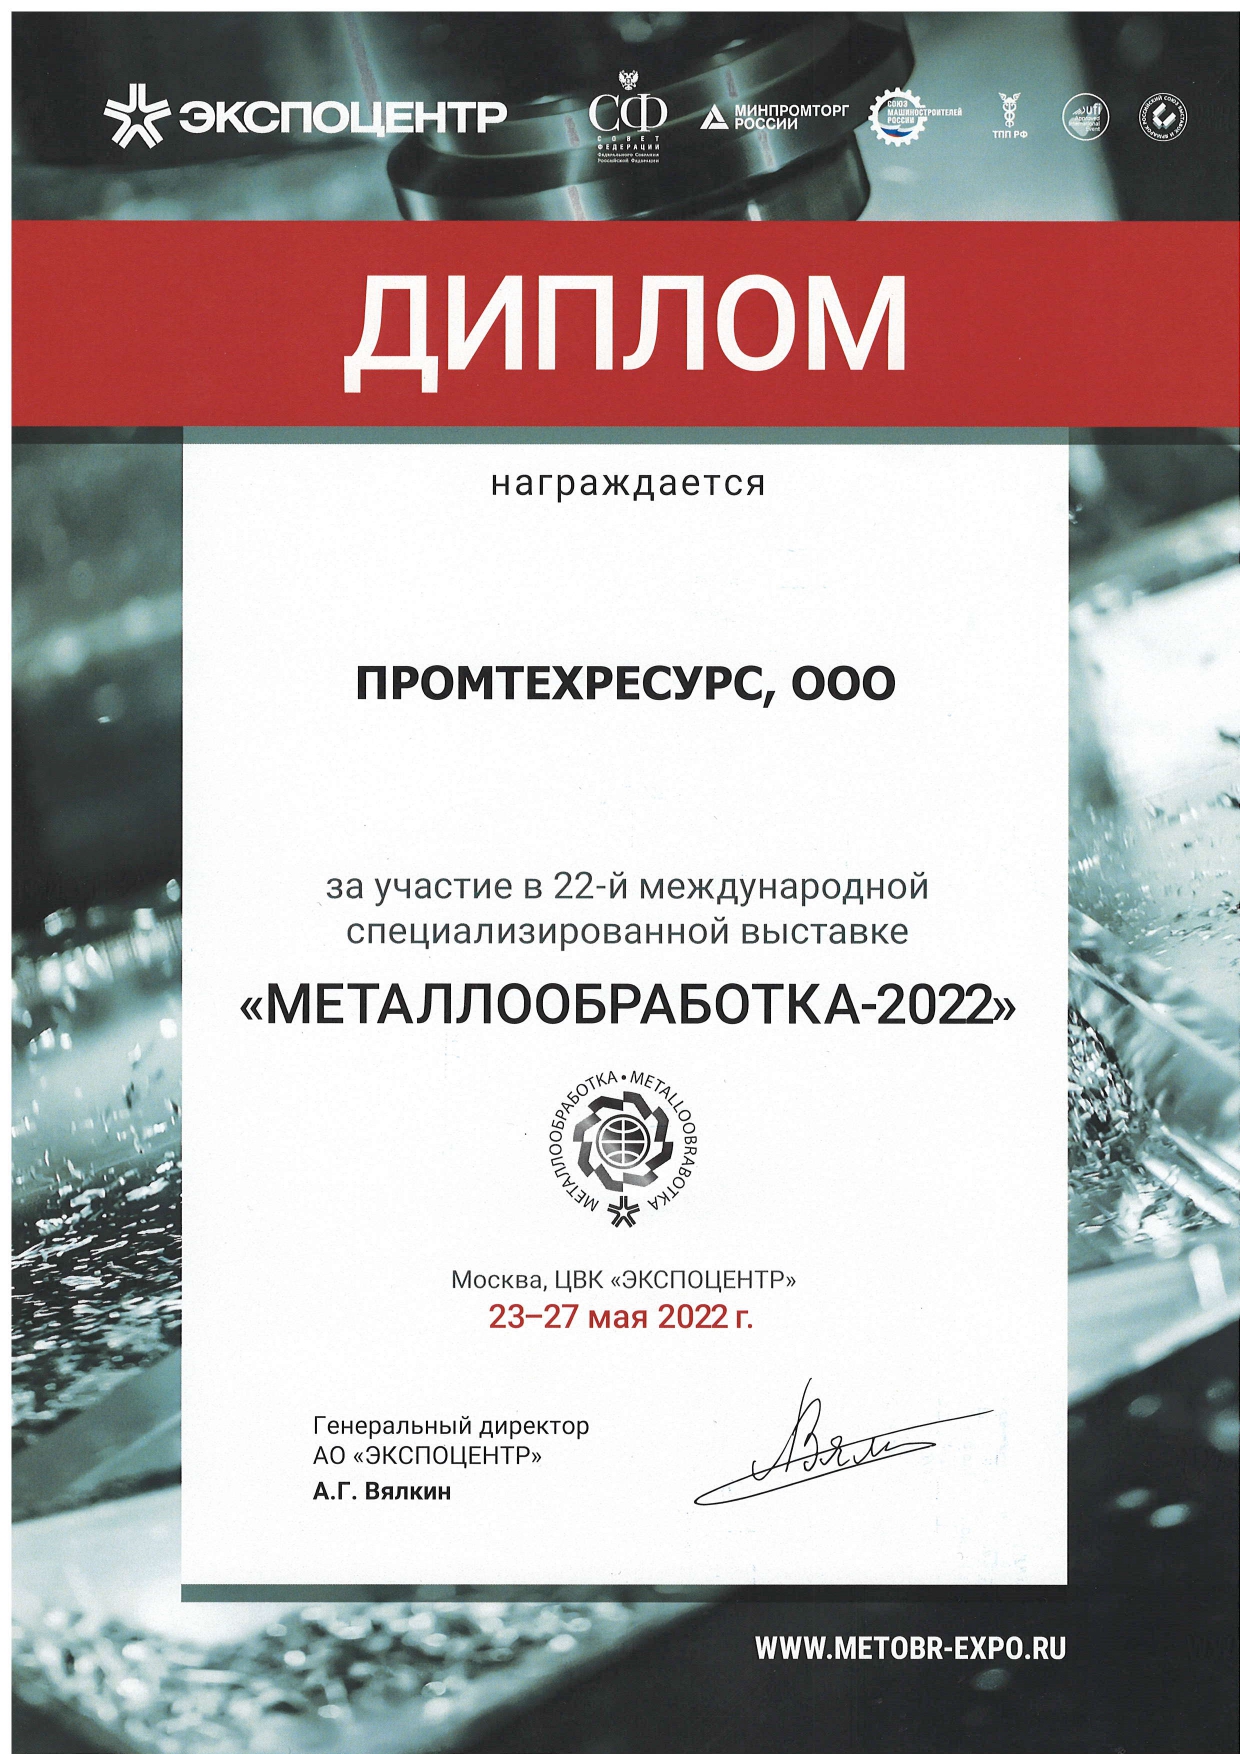 Металлообработка-2022